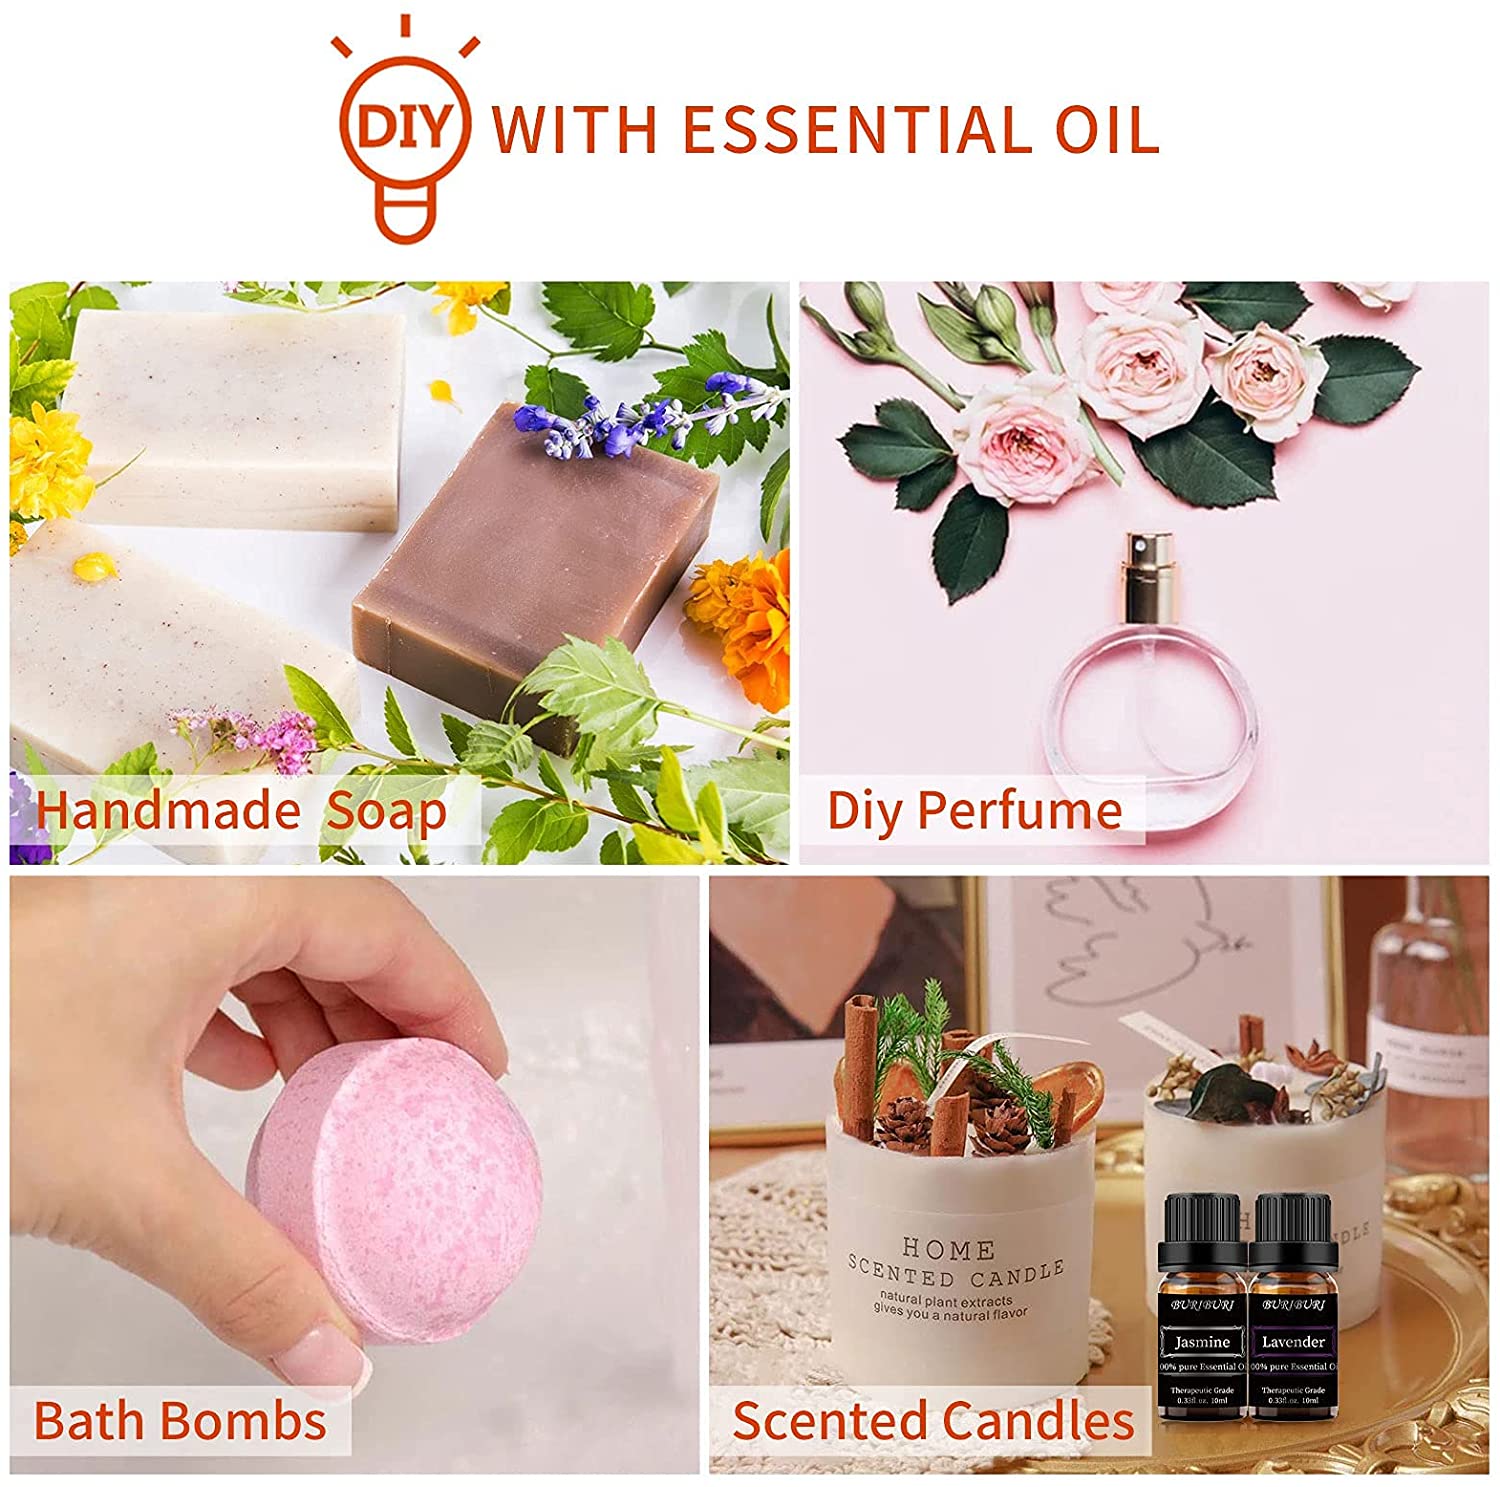 lavender peppermint tea tree jasmine  essential oil